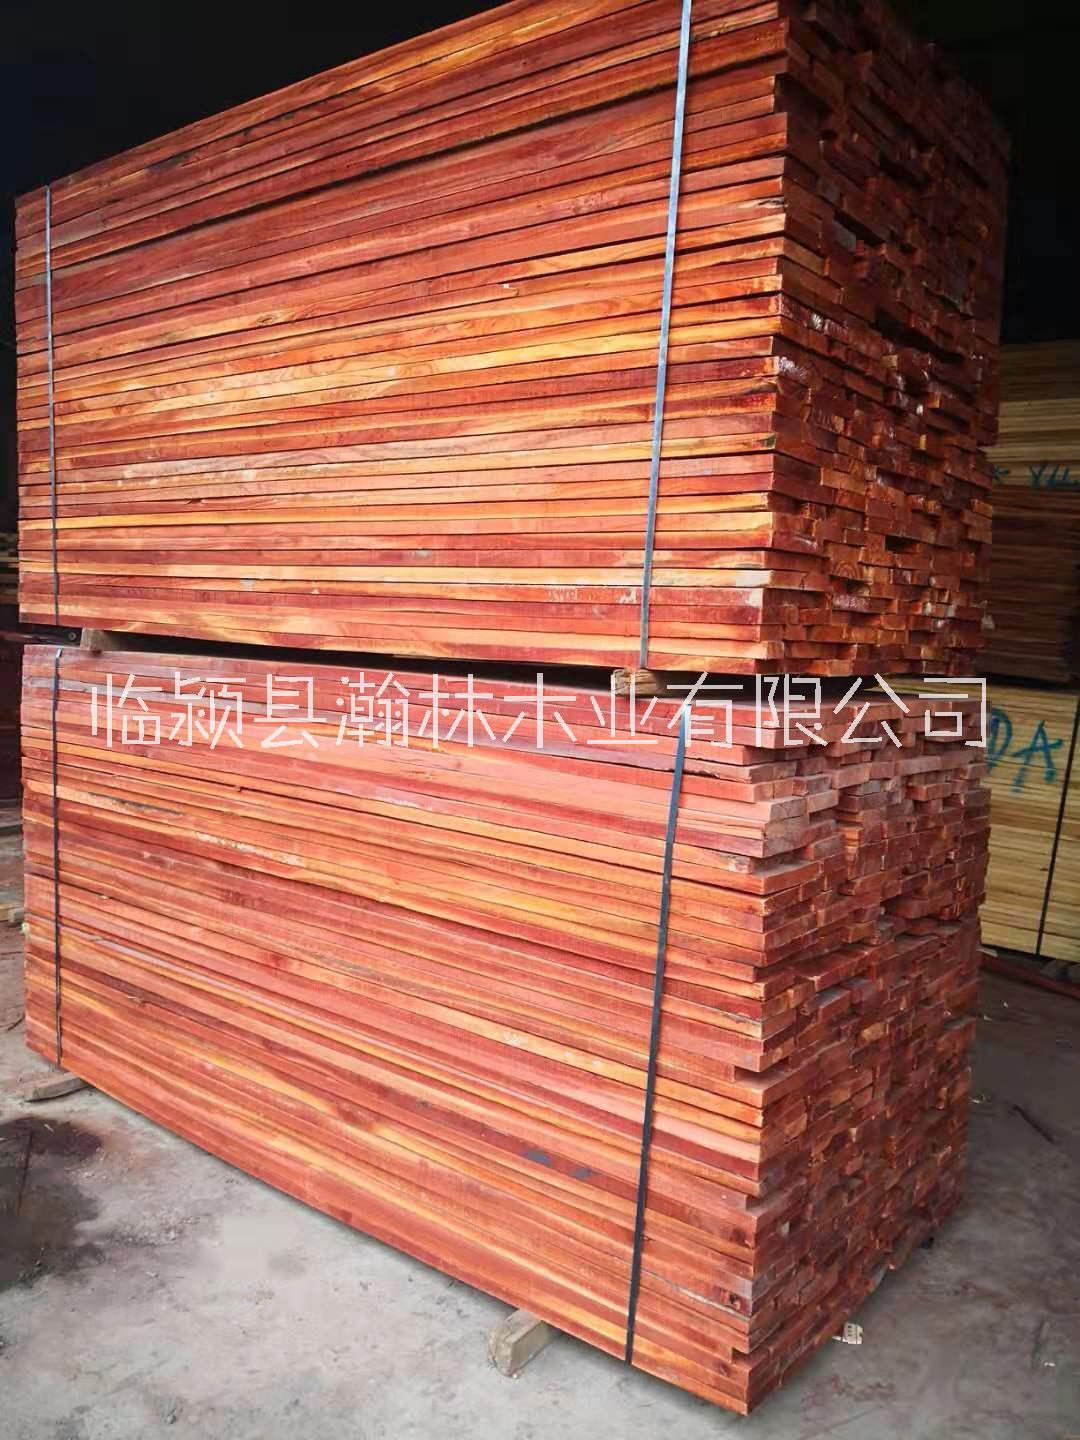 实木红椿木板材 蒸汽烘干热板材 压定型红椿木 实木家具材料 蒸汽烘干热红椿木板材 红椿木家具材料